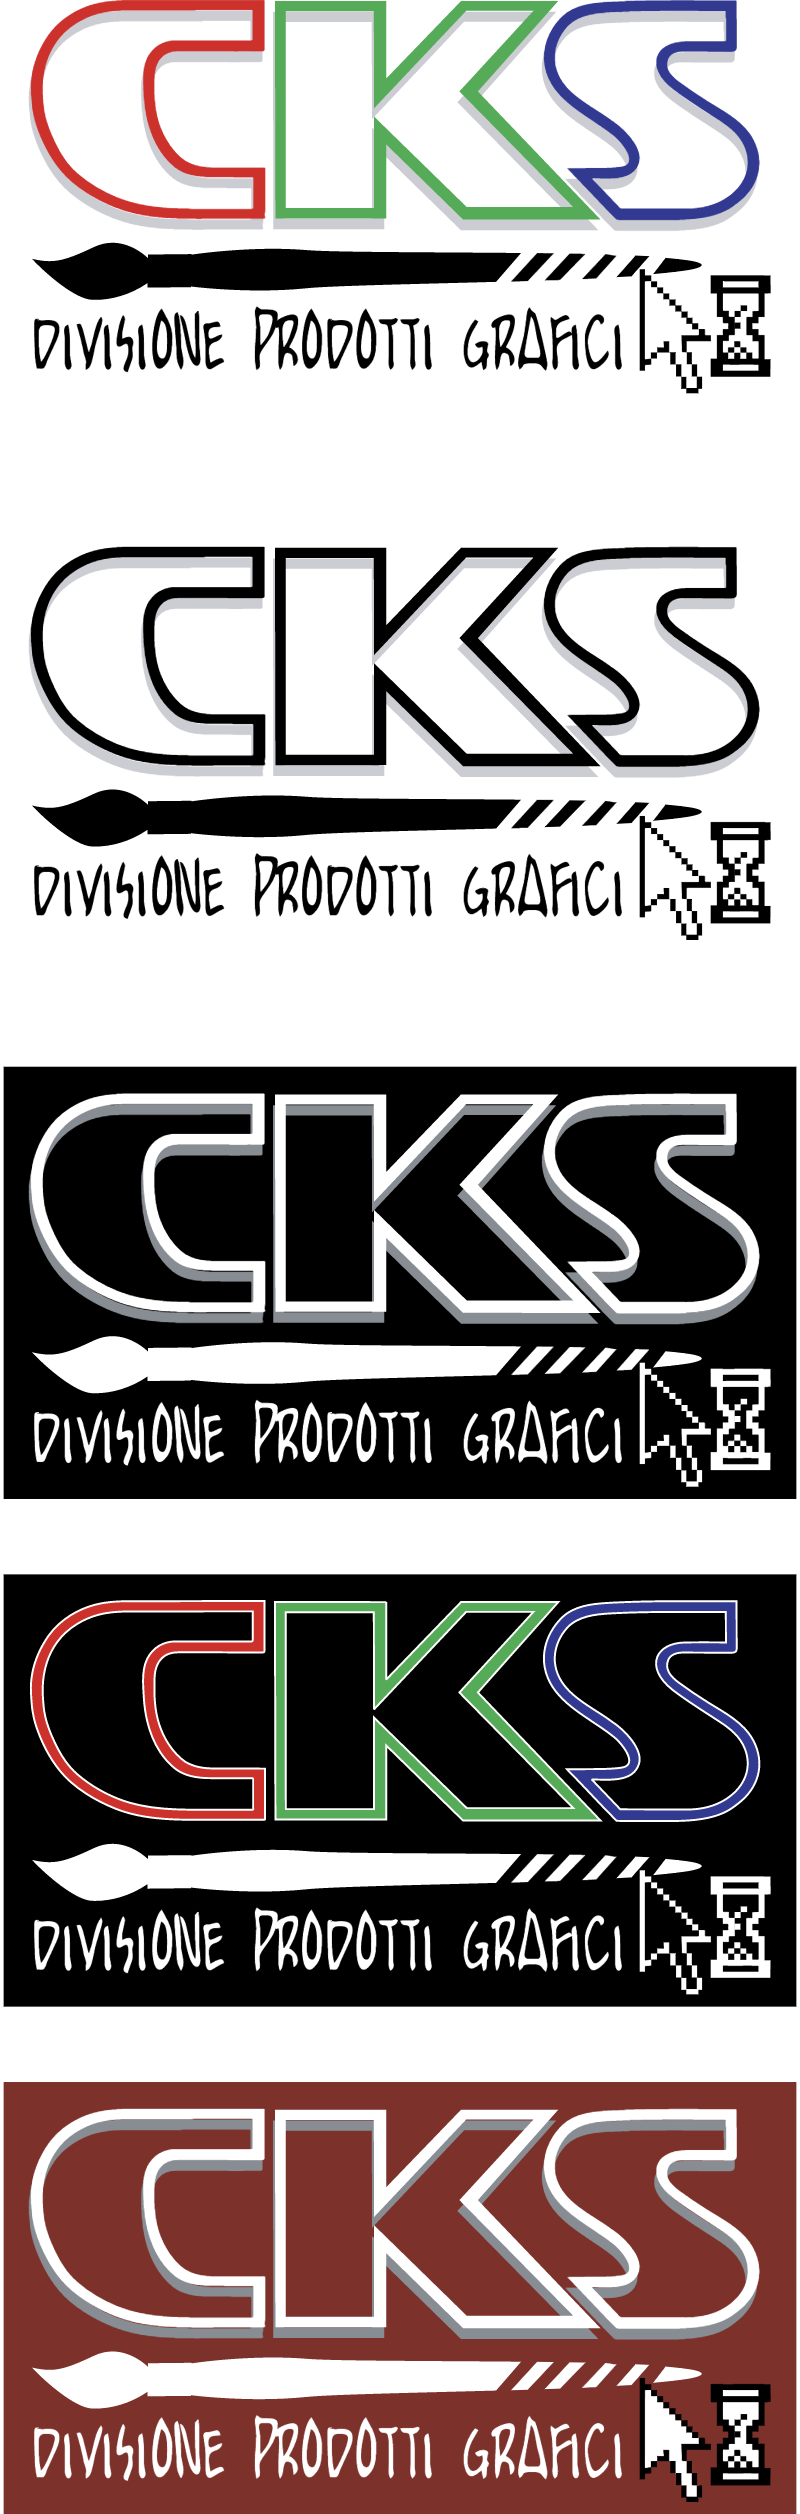 CKS Cinema e Comunicazione s r l vector logo